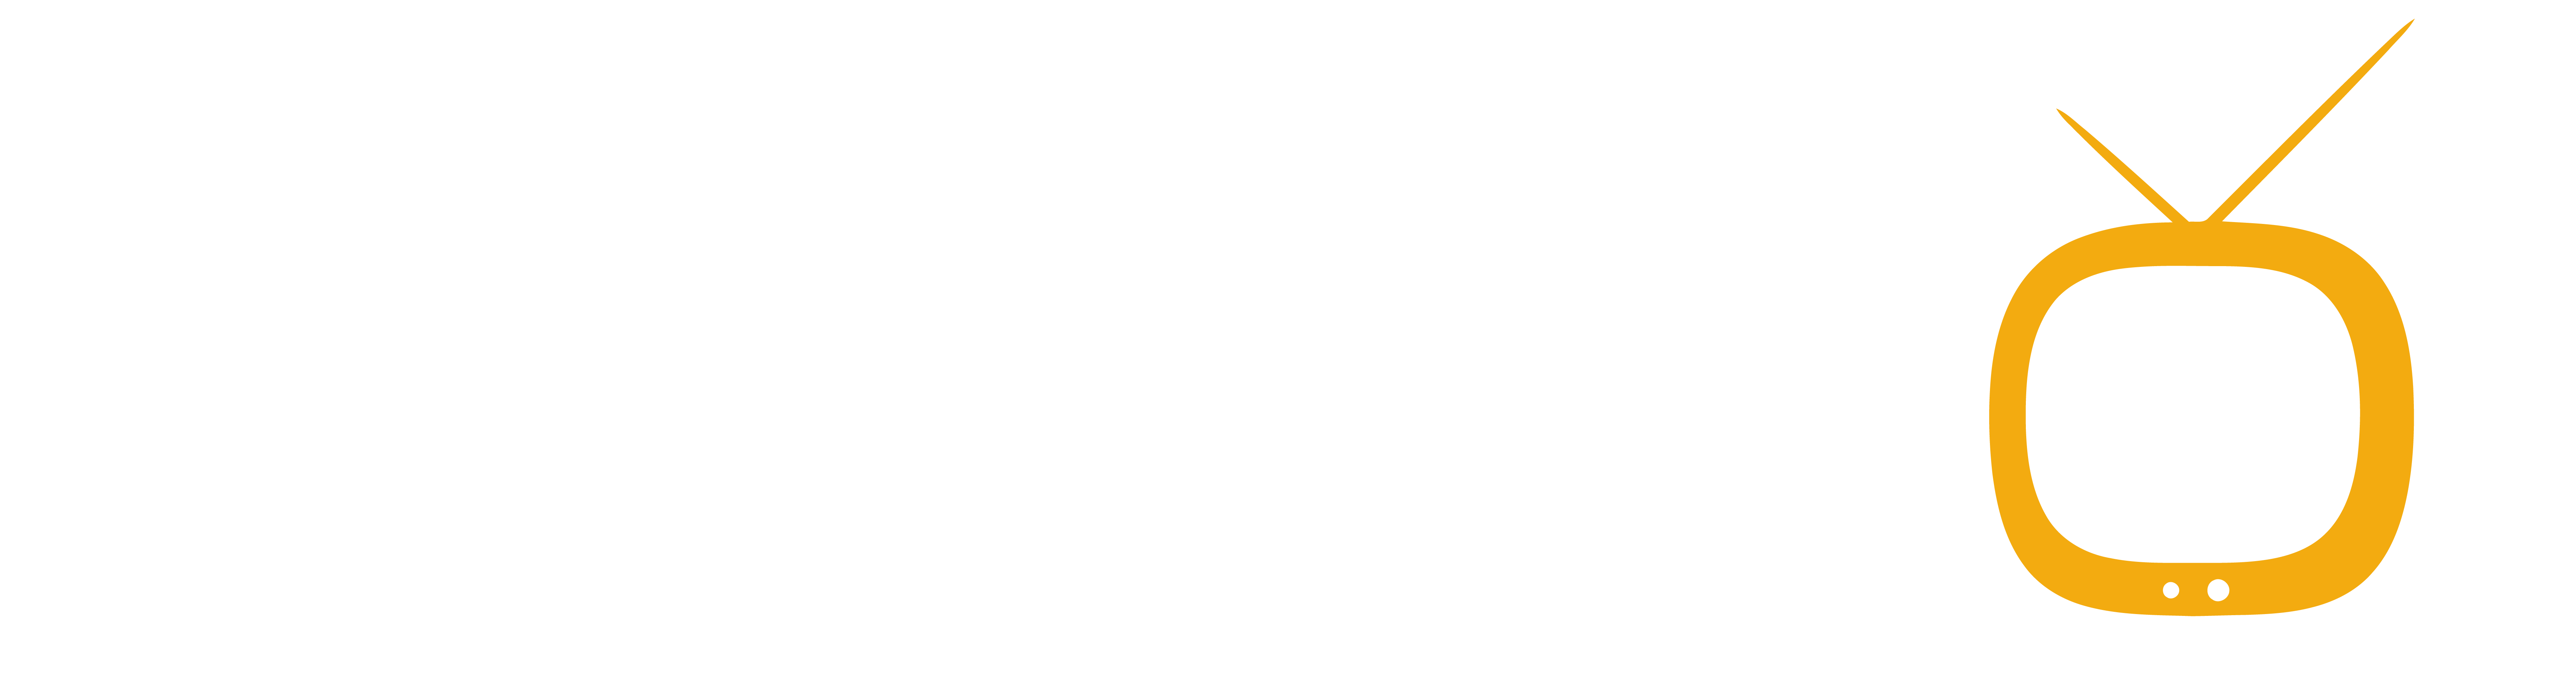 Myvideochannel.tv